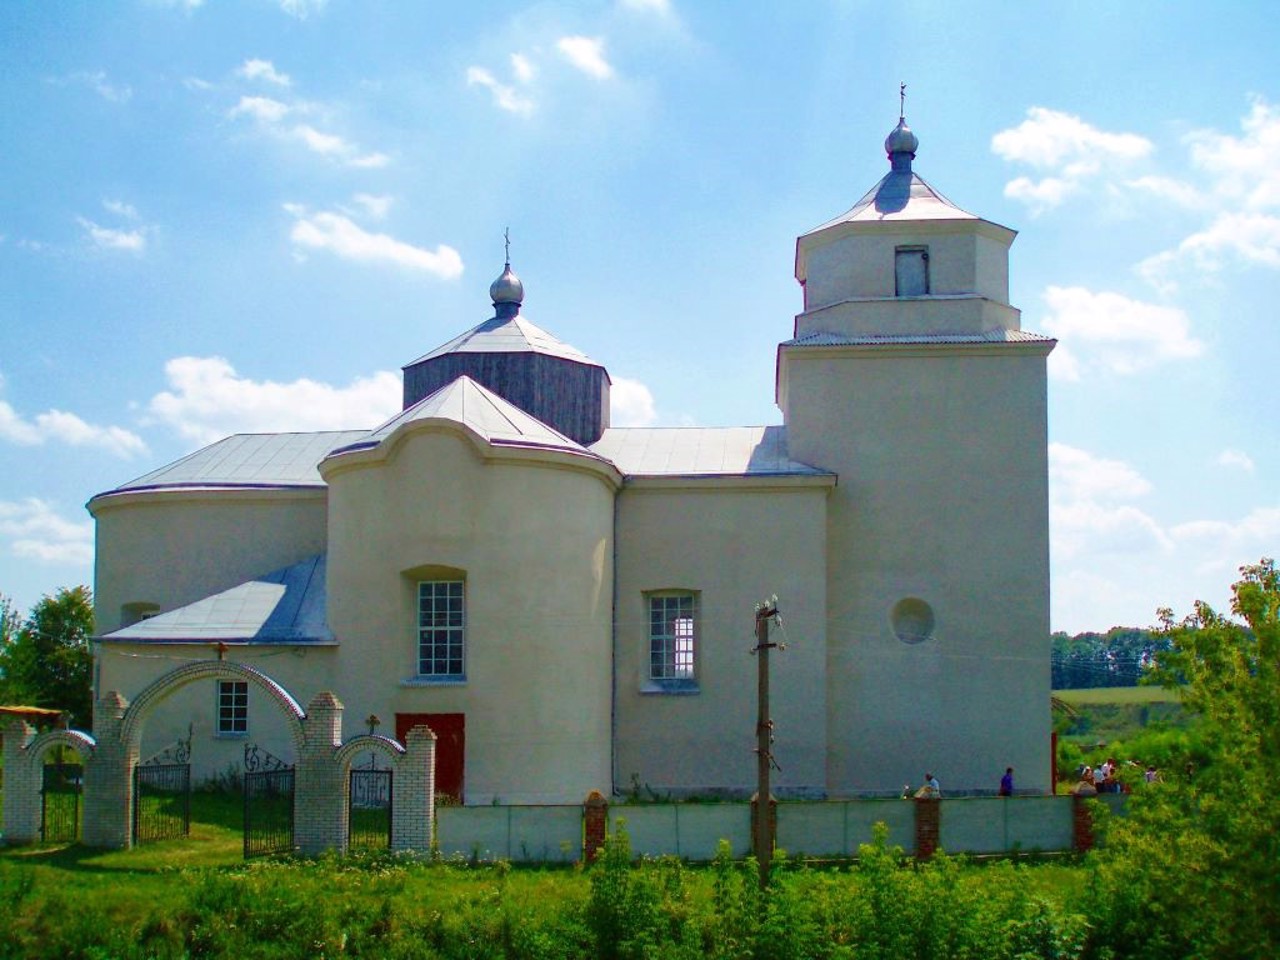 Sharivka village, Khmelnytskyi region